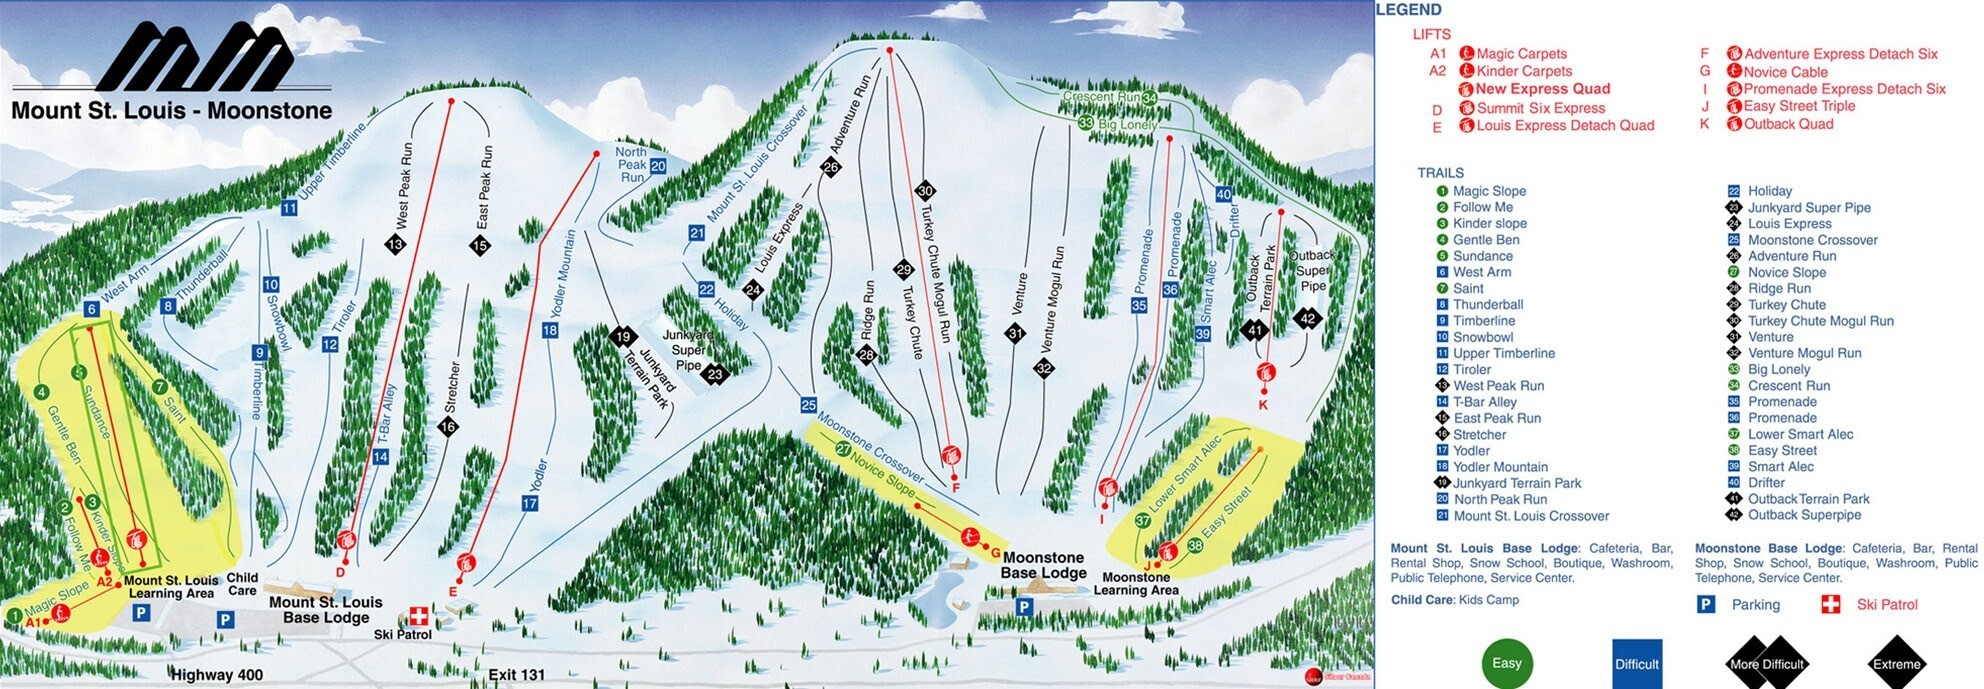 Guide de Station de Ski de Mt St Louis Moonstone, Carte & hébergement vacances de ski à Mt St ...